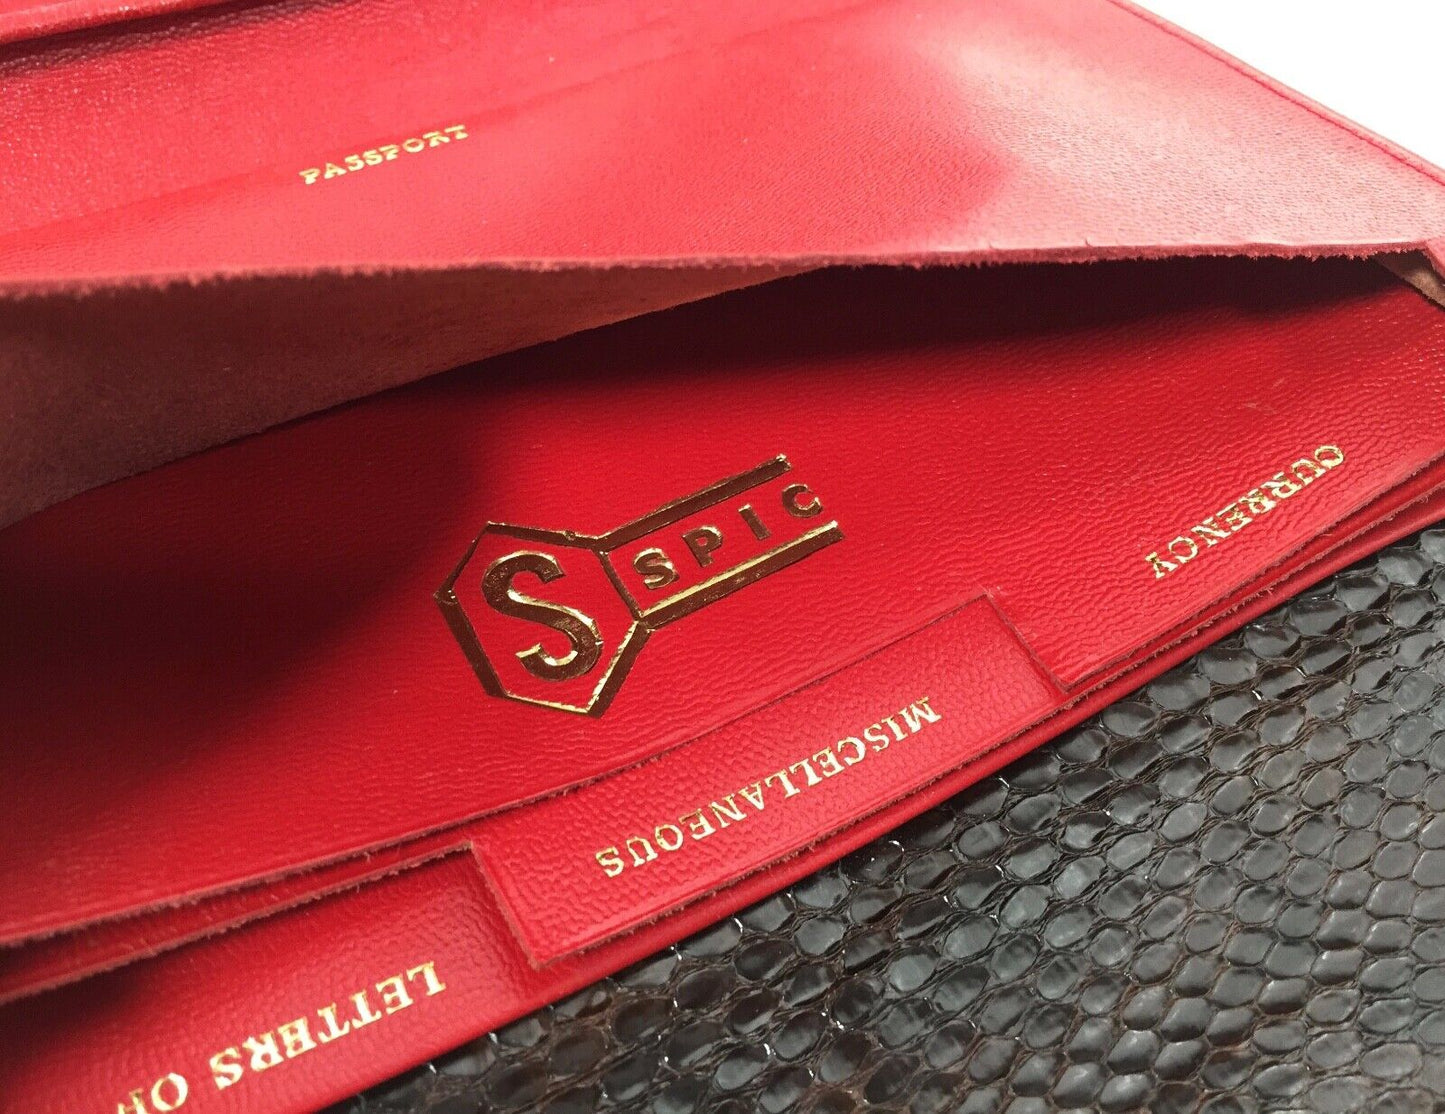 Vintage Leather Brown Snakeskin Travel Wallet / Purse / Ladies Bag Accessories